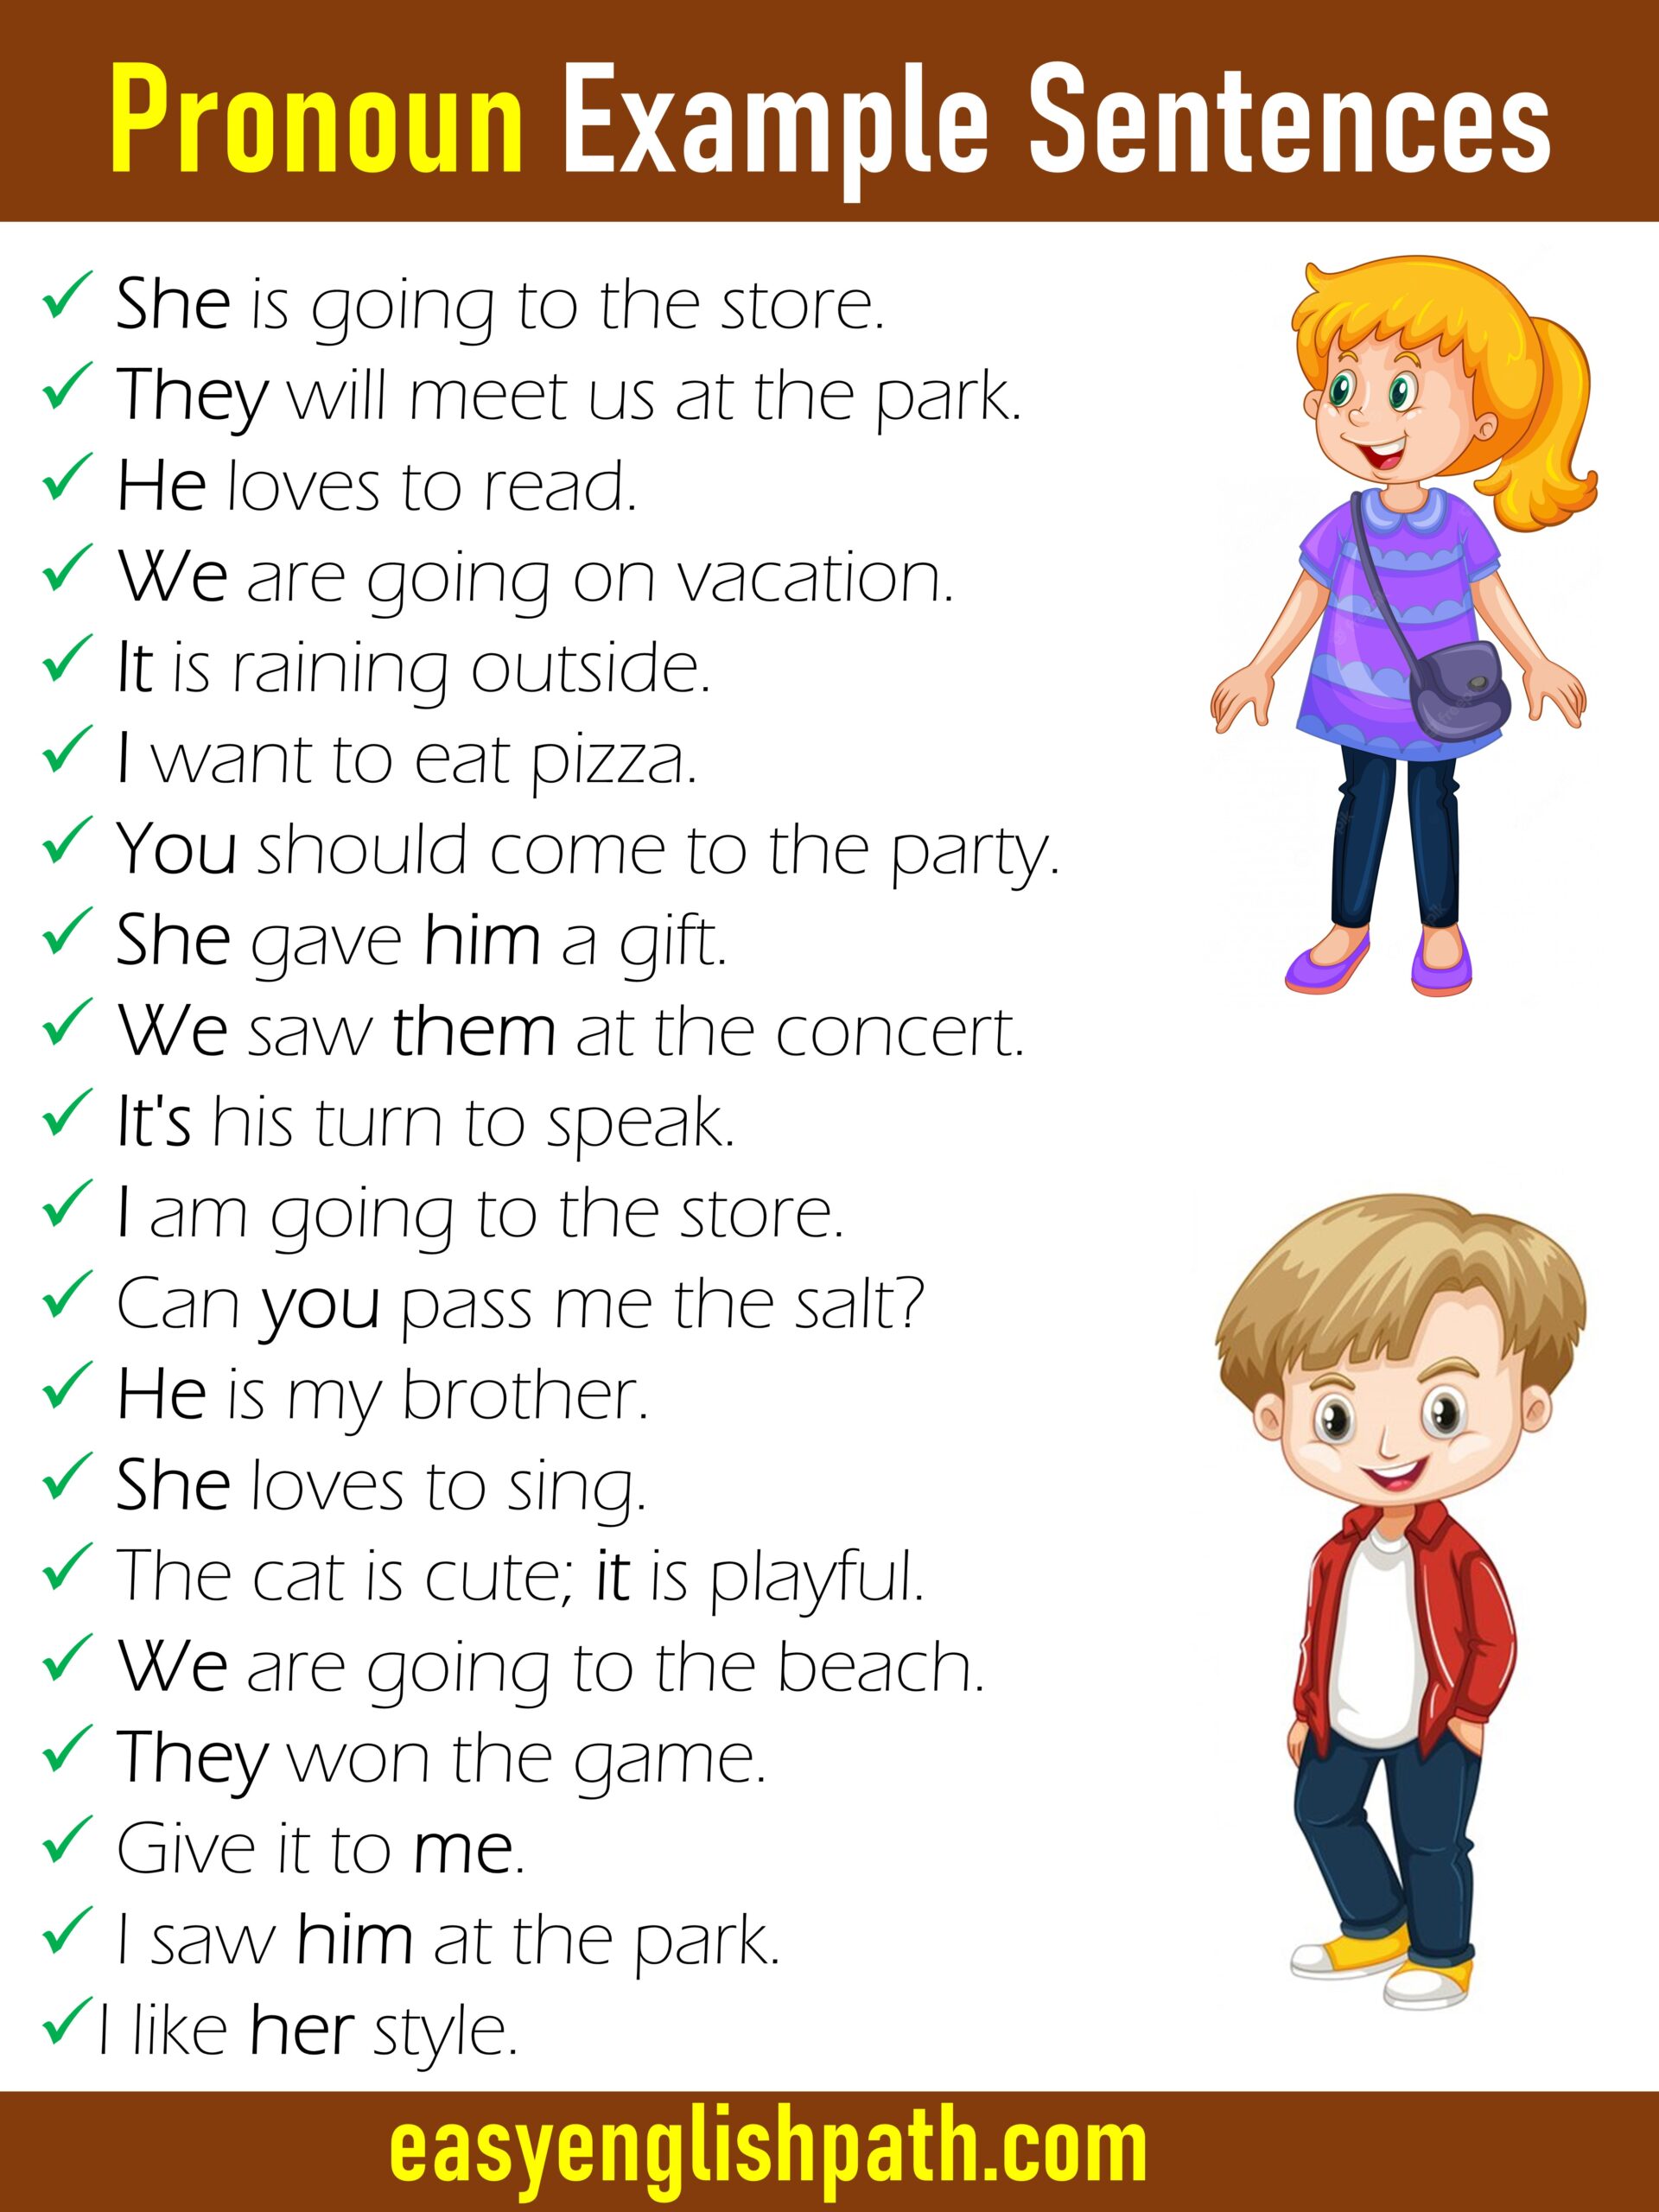 Pronoun Example Sentences in English